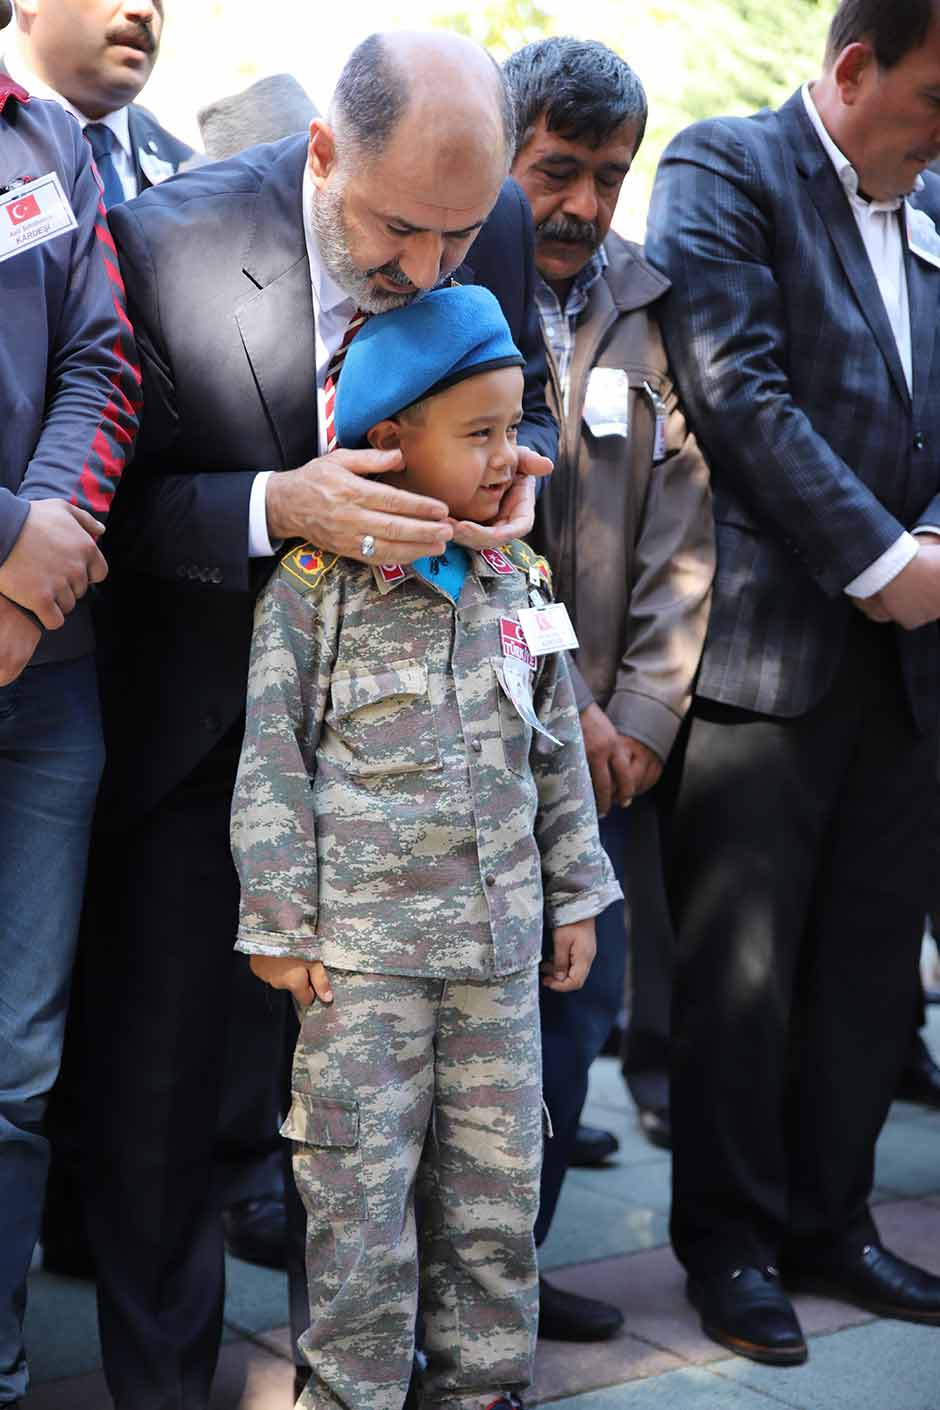 Batman'ın Gercüş ilçesinde PKK'lı teröristlerin önceden yola tuzakladıkları el yapımı patlayıcının zırhlı aracın geçişi sırasında infilak ettirilmesi sonucu meydana gelen patlamada şehit olan Eskişehirli Jandarma Uzman Çavuş Neşet Gök, sevenlerinin gözyaşları arasında son yolculuğuna uğurlandı. Şehidin 7 yaşındaki kardeşi Batuhan, cenaze törenine askeri kamuflaj giyerek katıldı